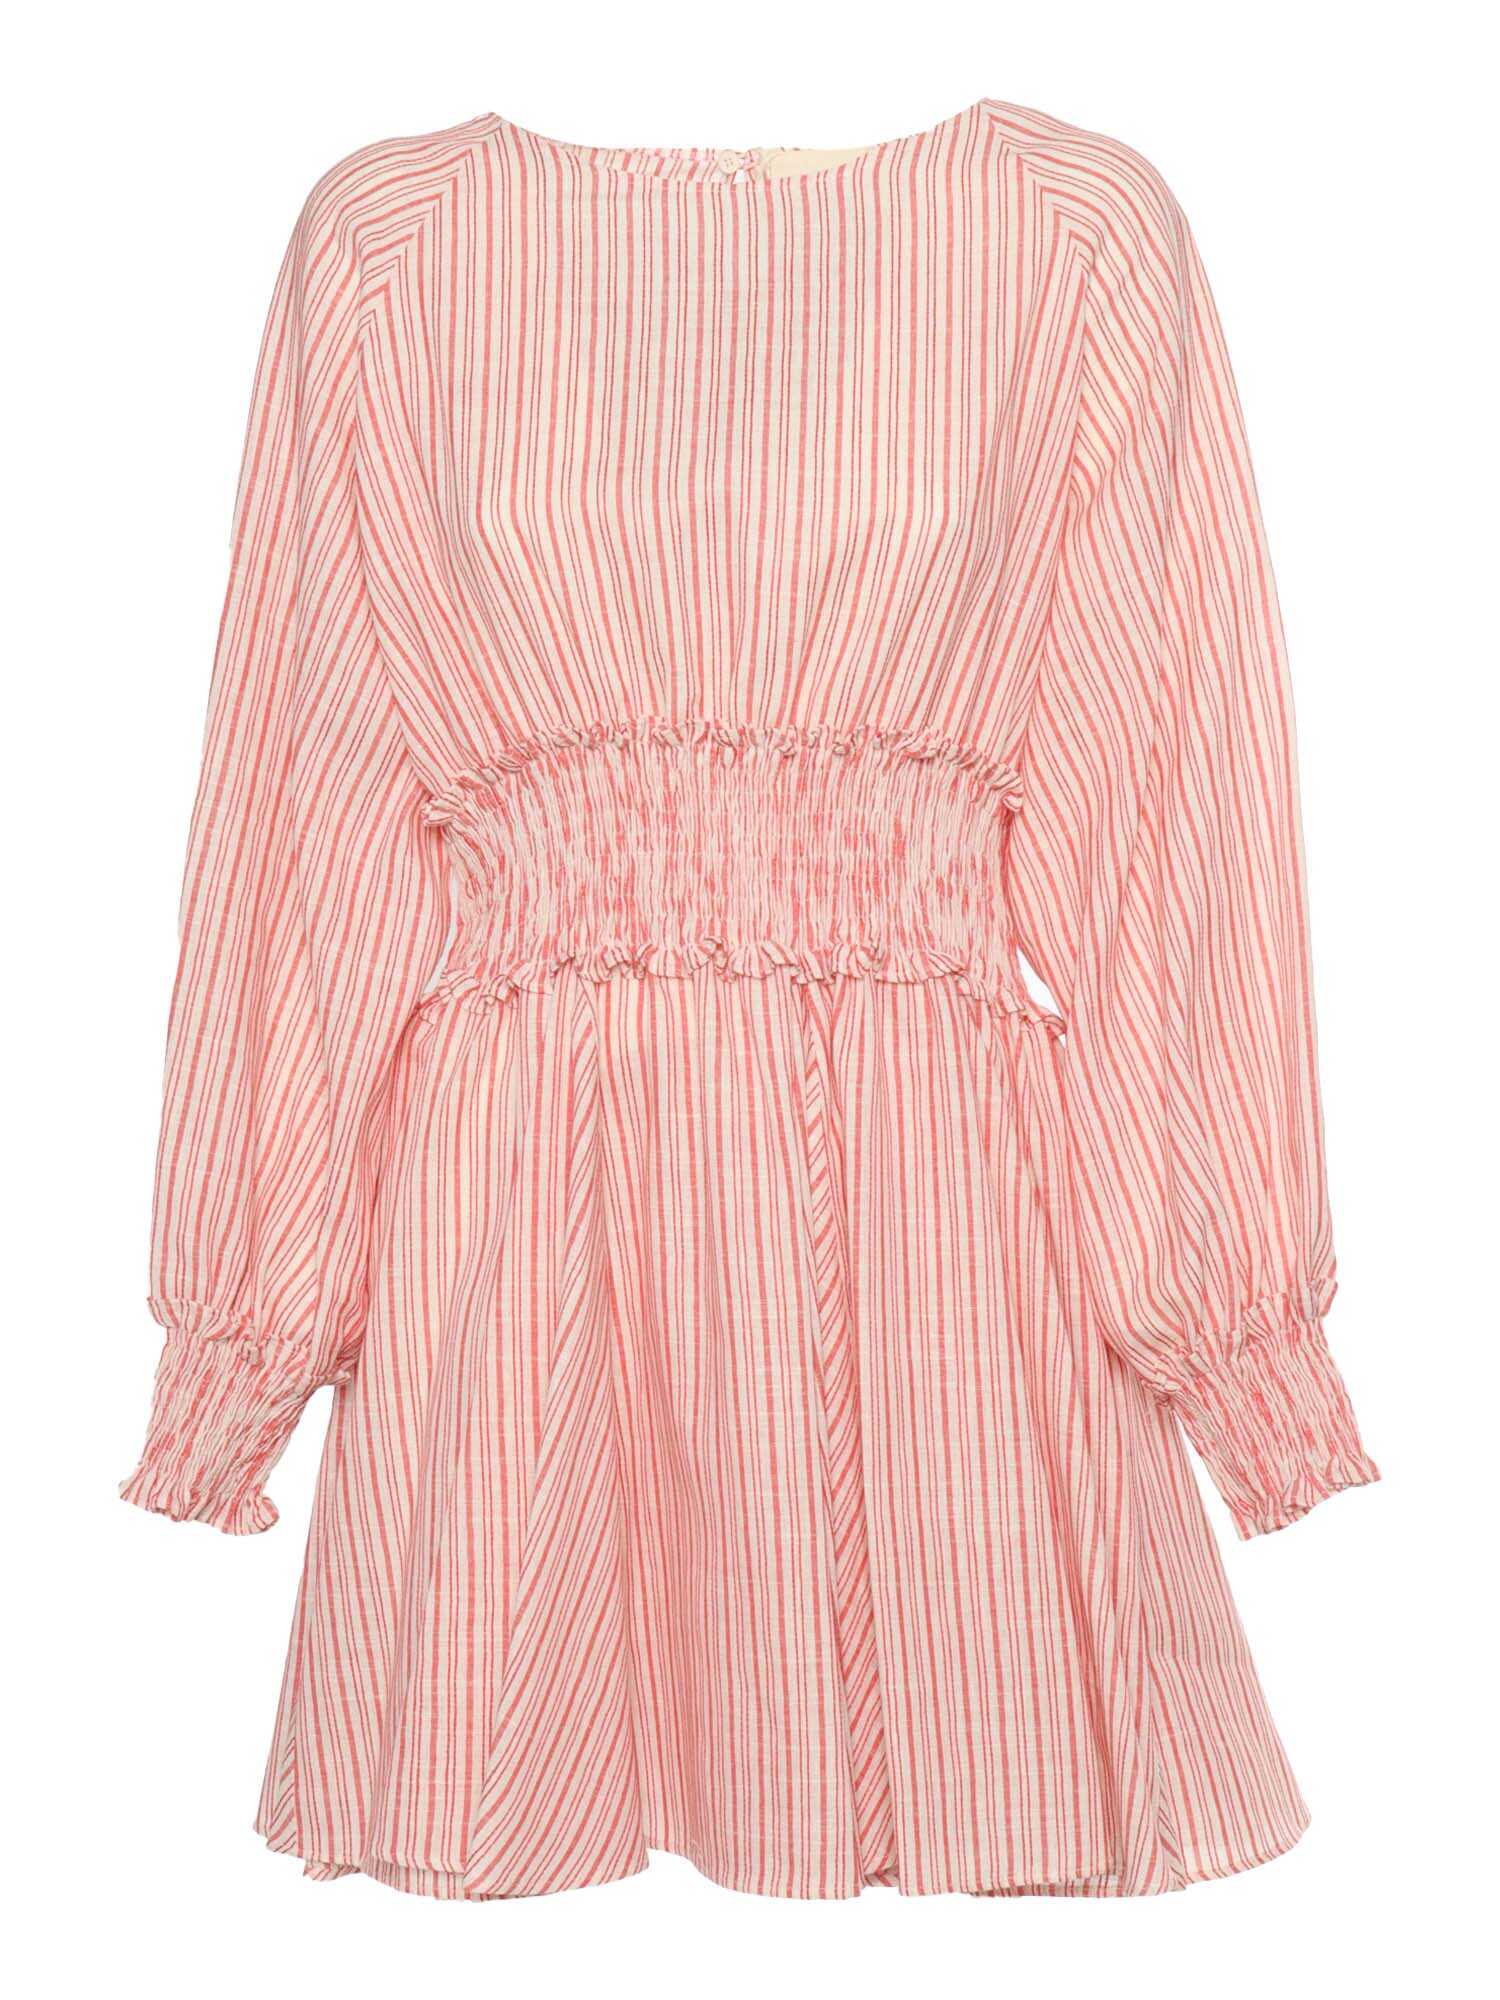 Poze Dou-Uod Striped dress Pink